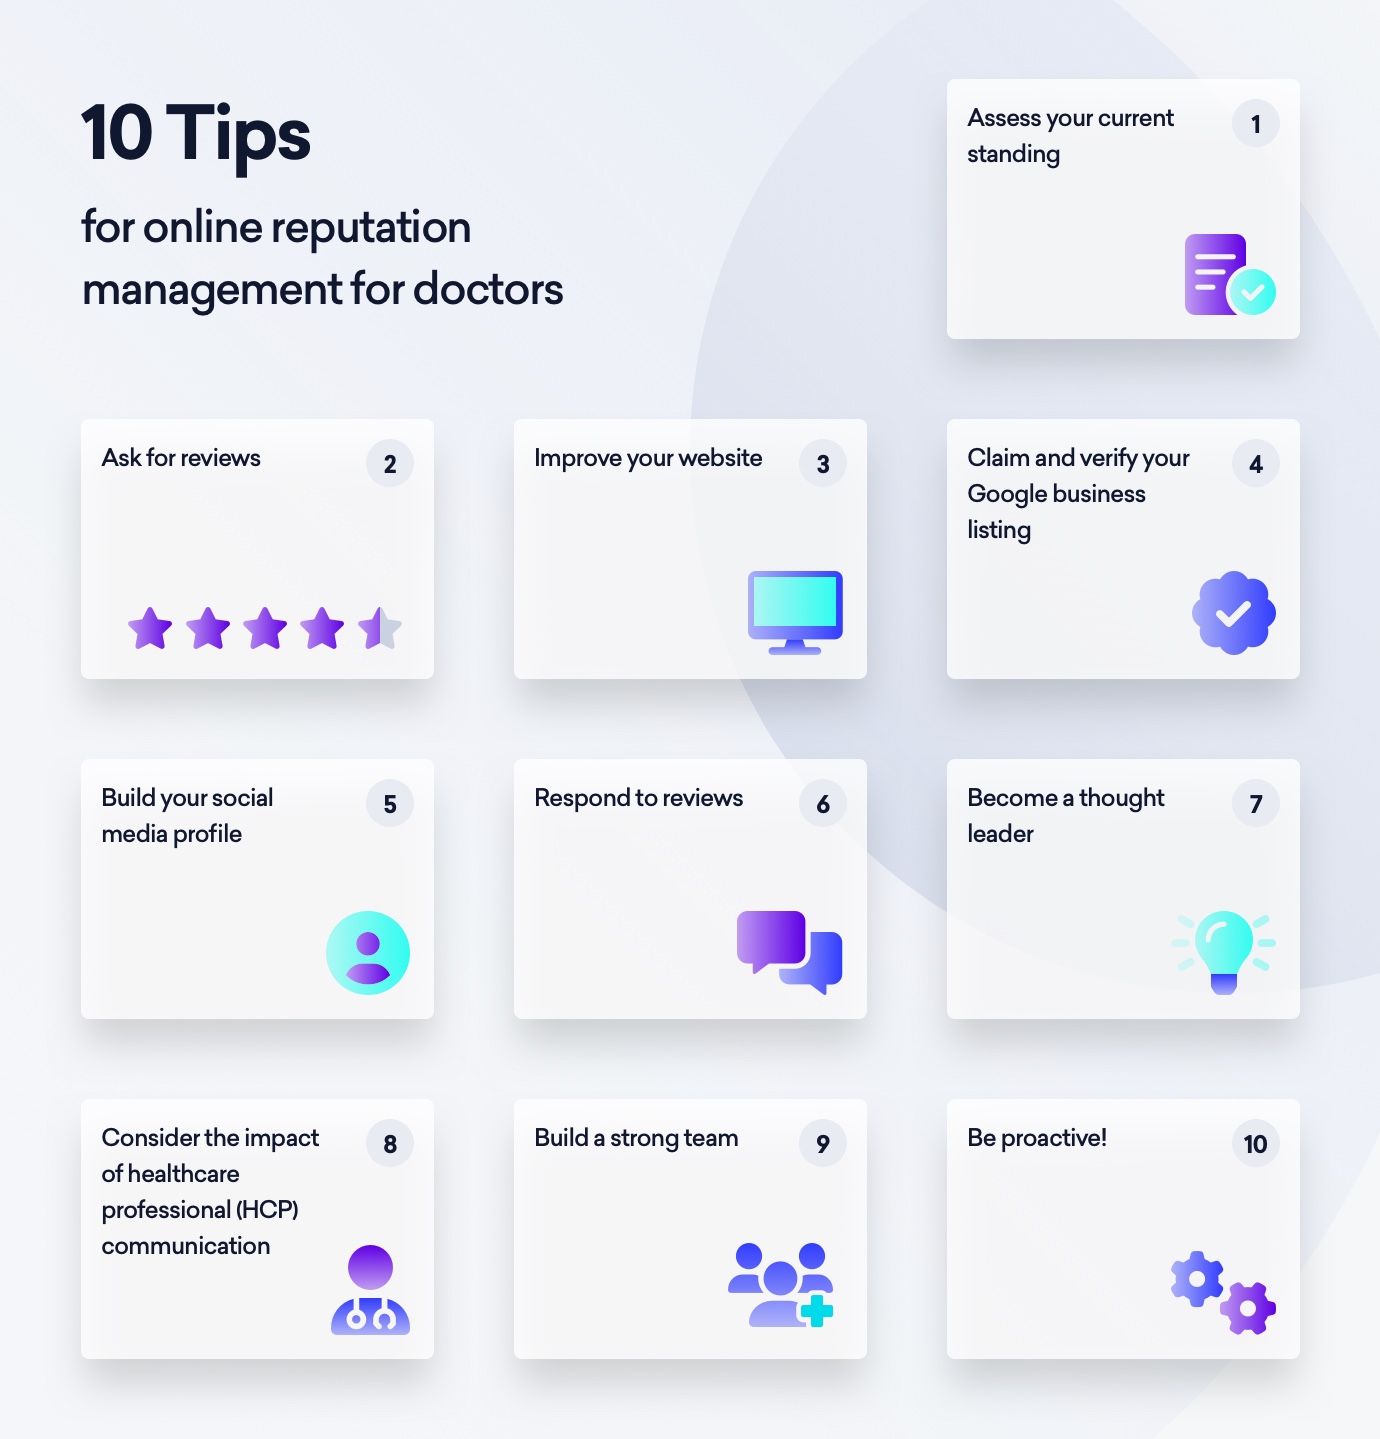 10 tips for online reputation management for doctors